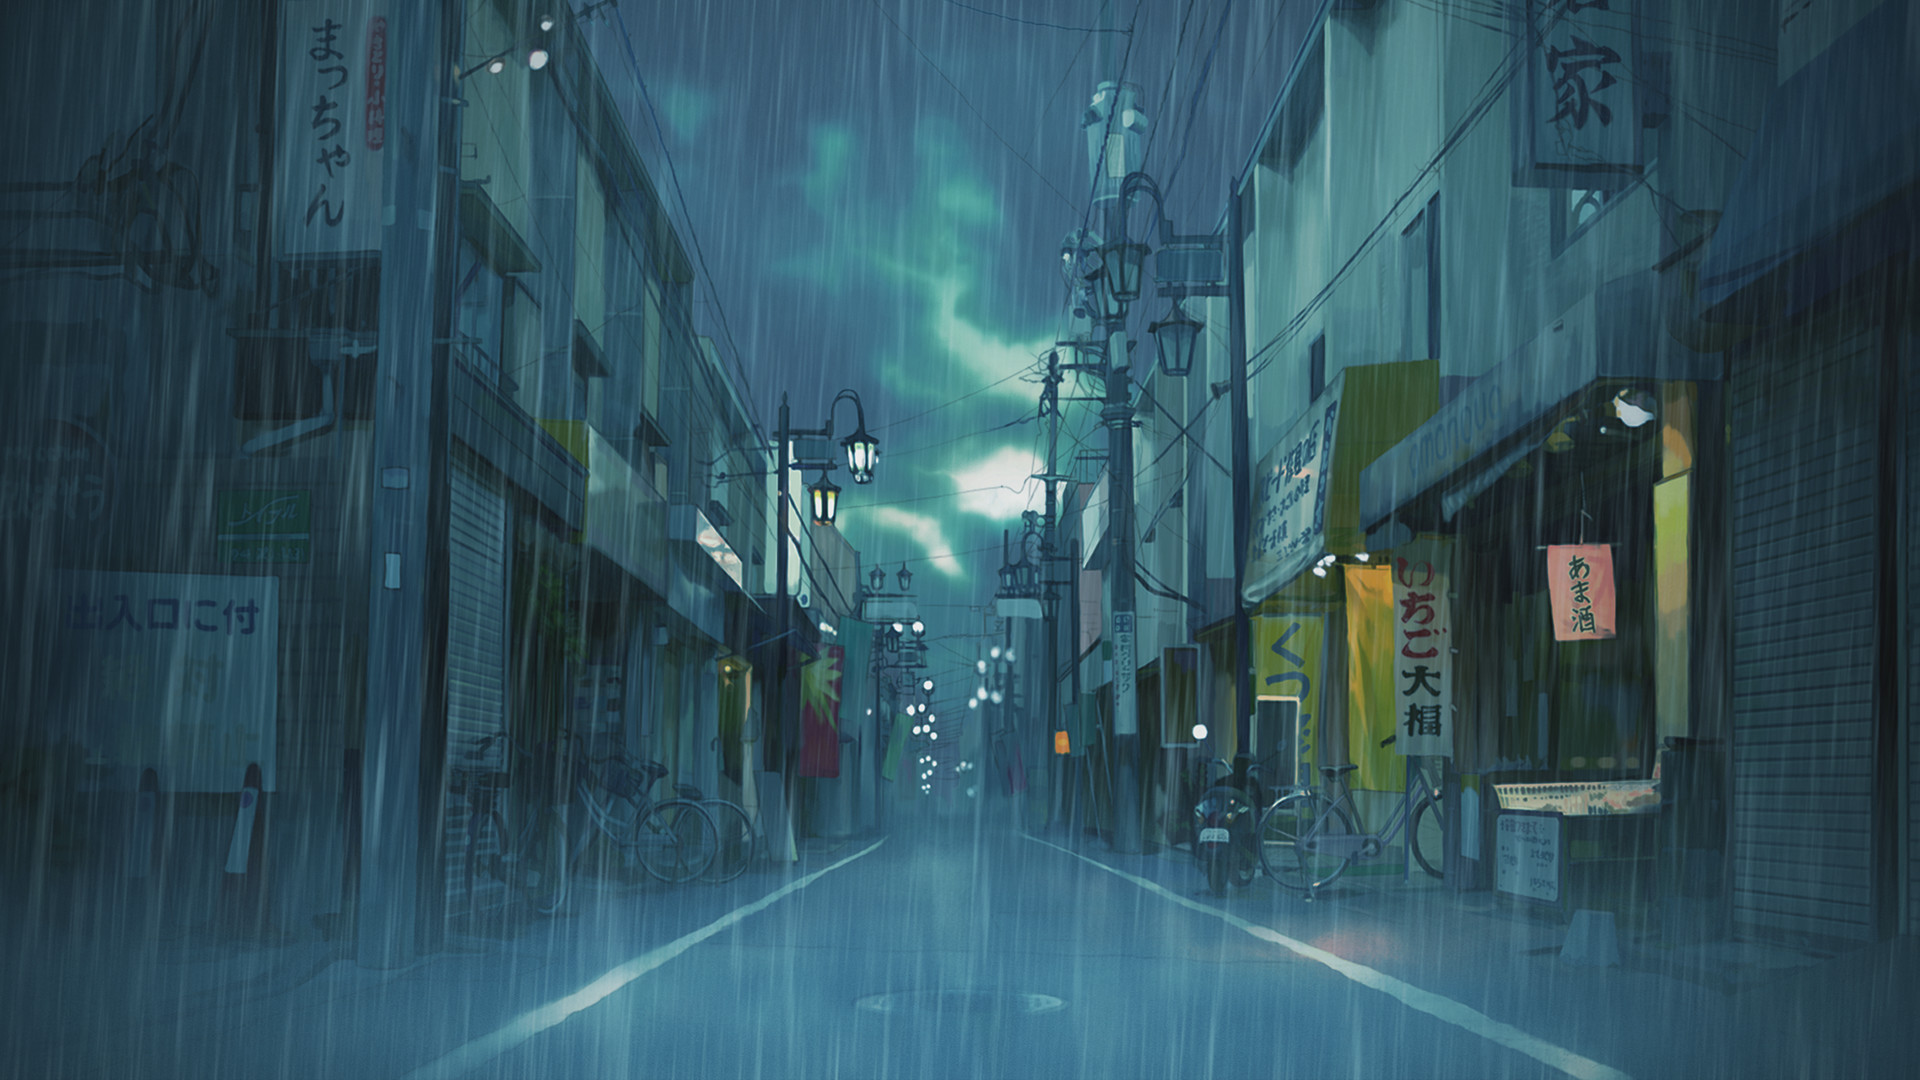 Asian, Japan, Street, Cityscape, Clouds, Rain, Landscape, Illustration